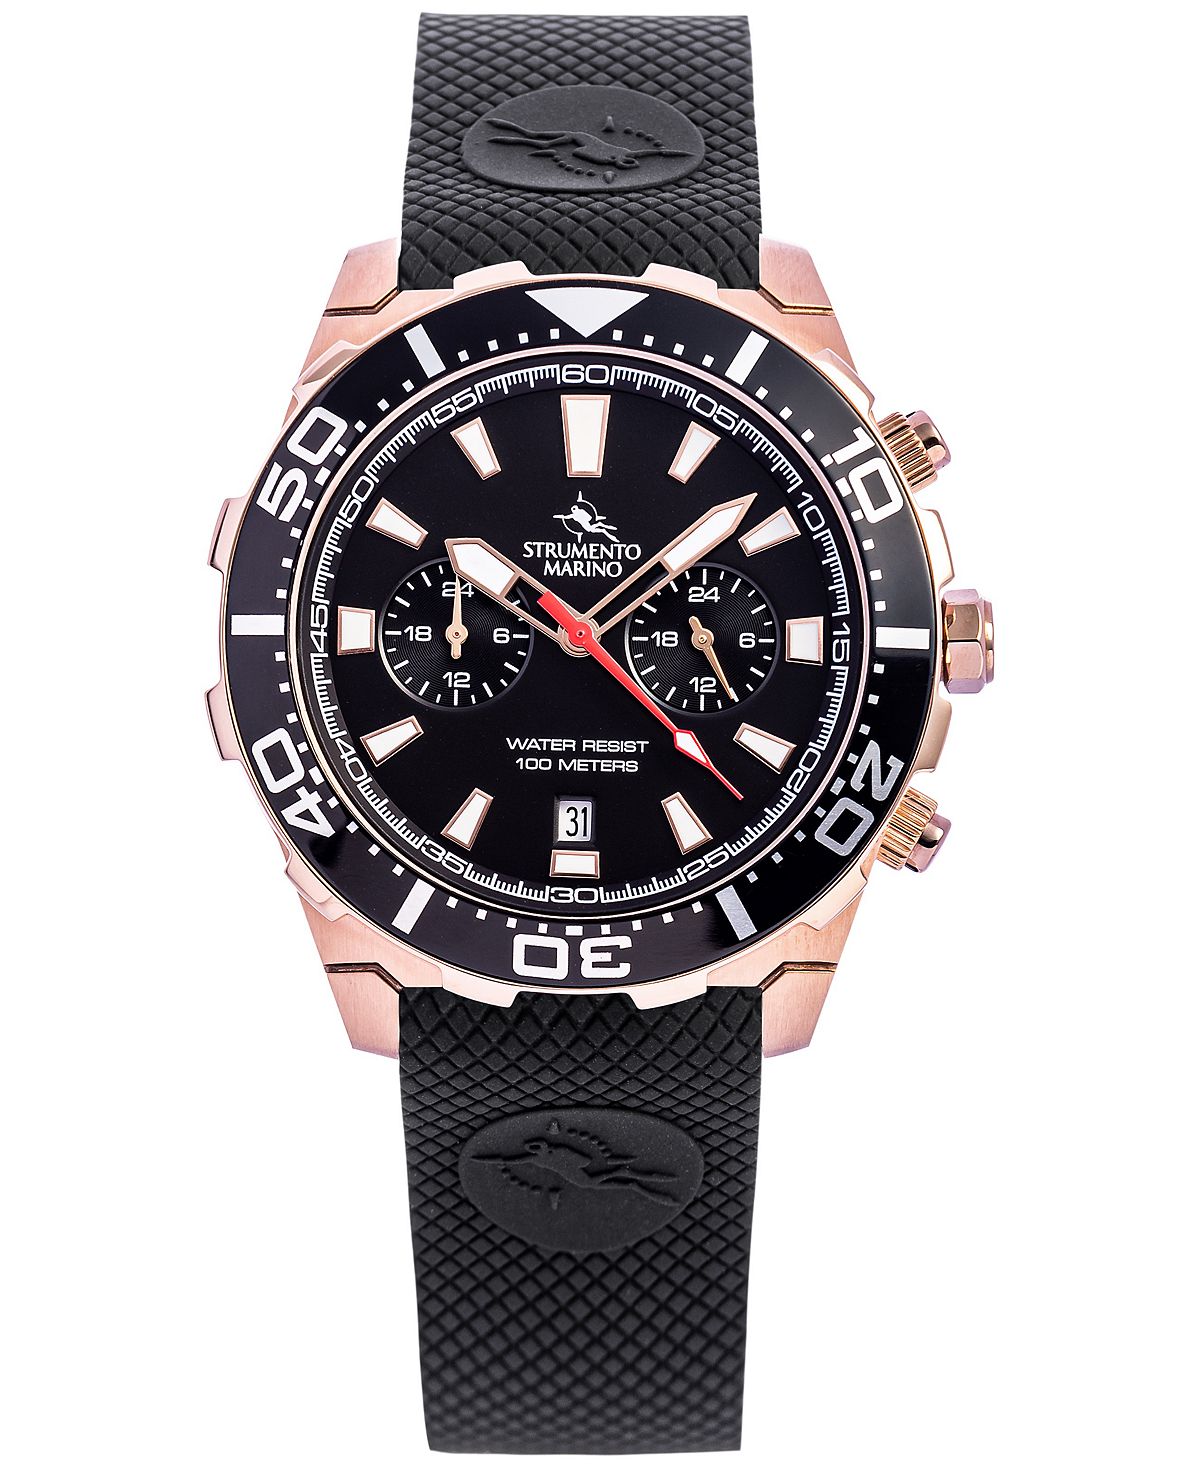 Мужские часы Skipper с двумя часовыми поясами, черный силиконовый ремешок, 44 мм Strumento Marino